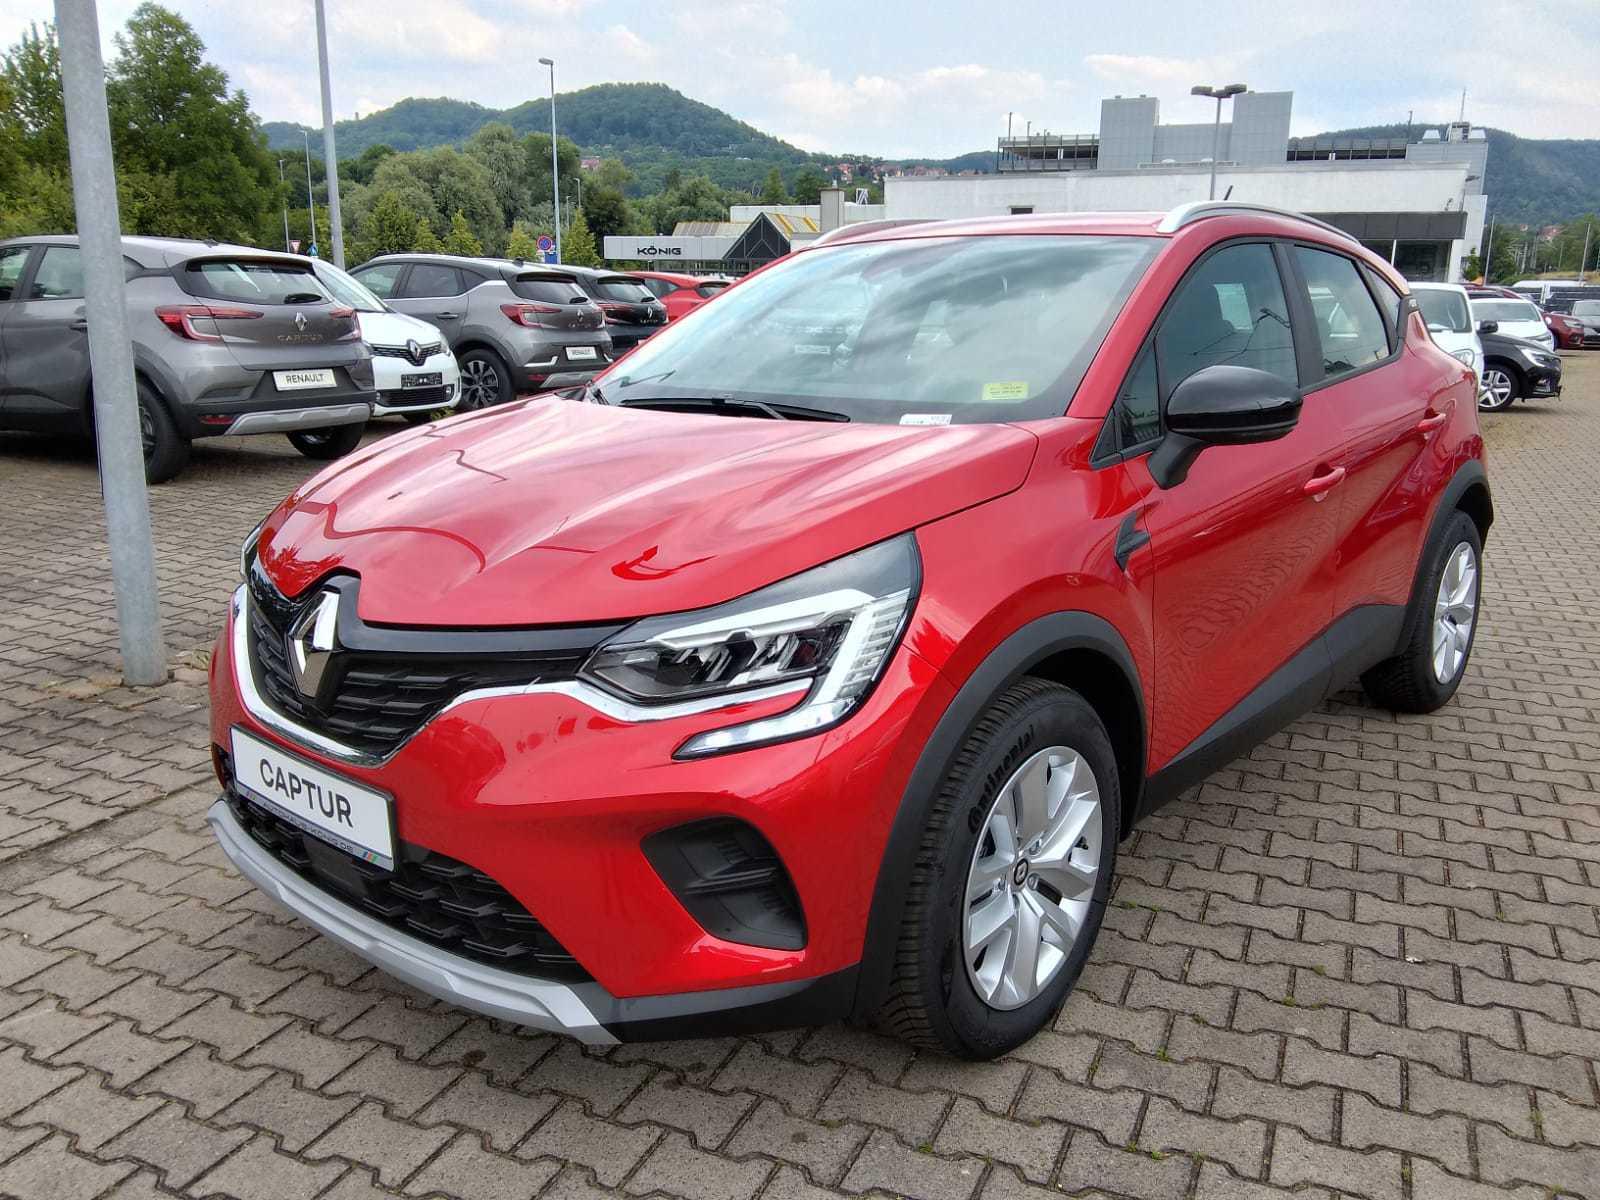 Renault Captur gebraucht kaufen in Norderstedt bei Hamburg Preis